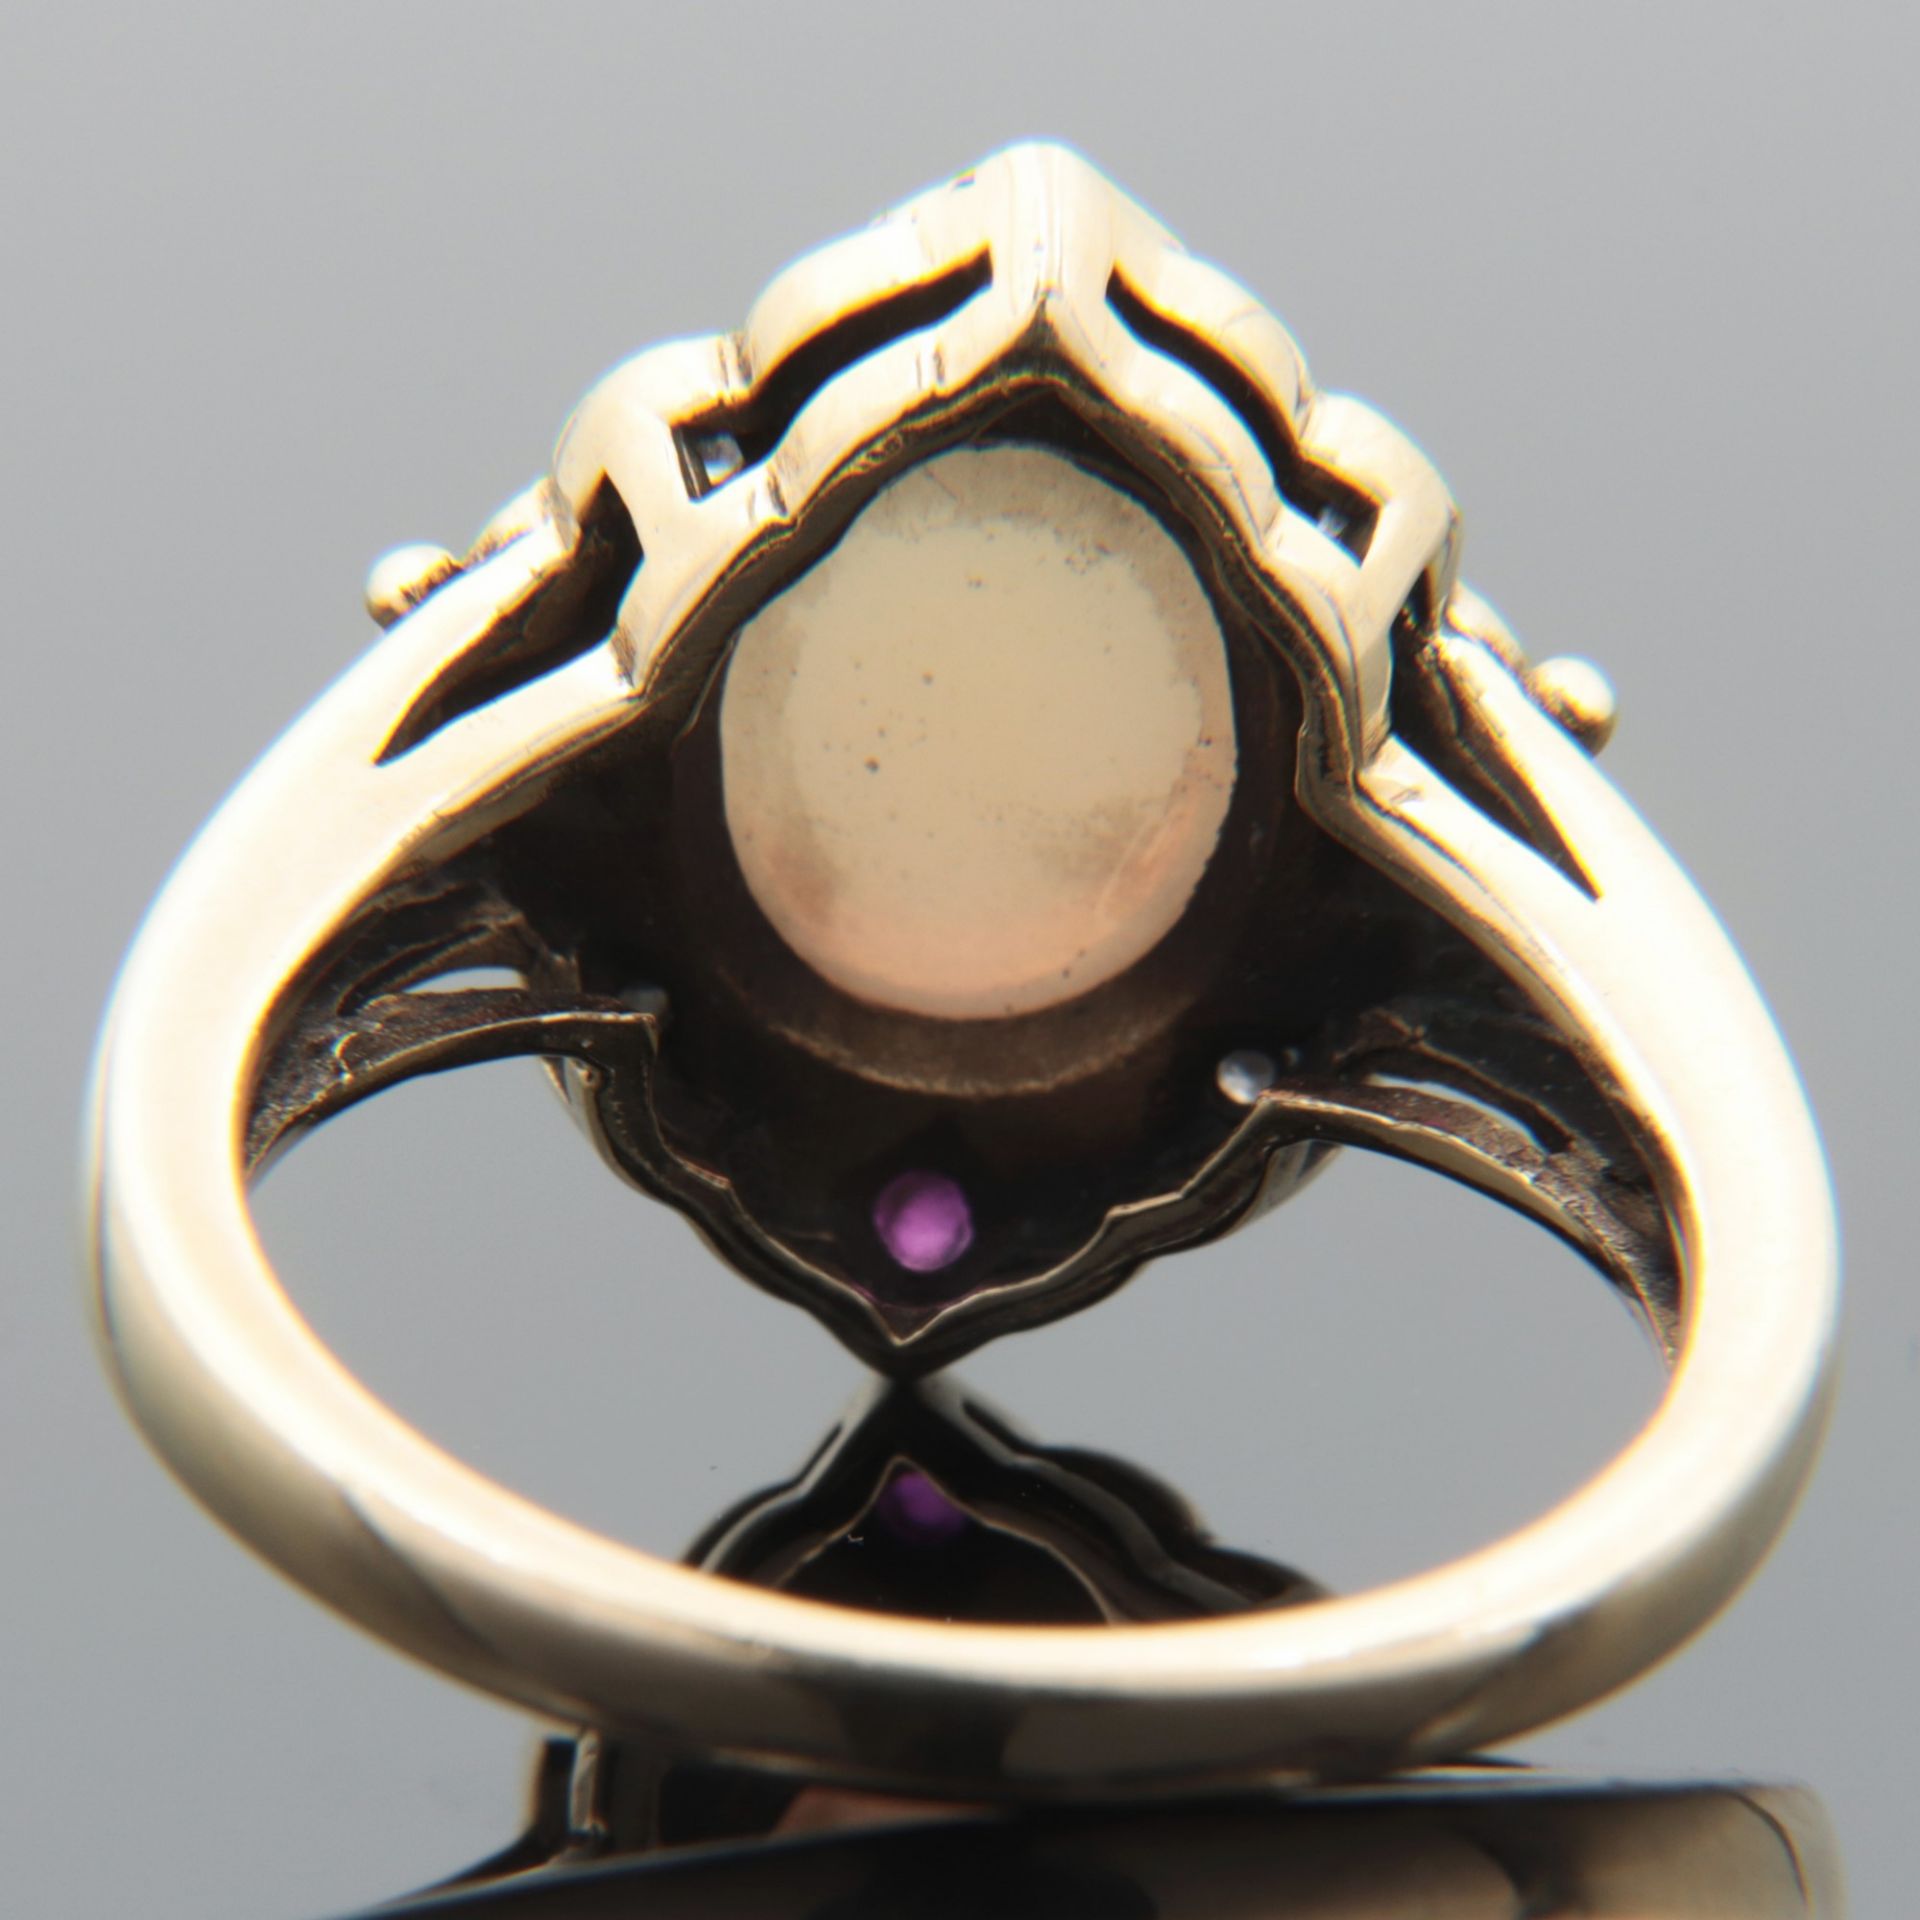 Diamant/Opal - Damenring GG 375, leicht rautenförmiger Ringkopf, mittig besetzt mit einem Opal- - Bild 4 aus 6